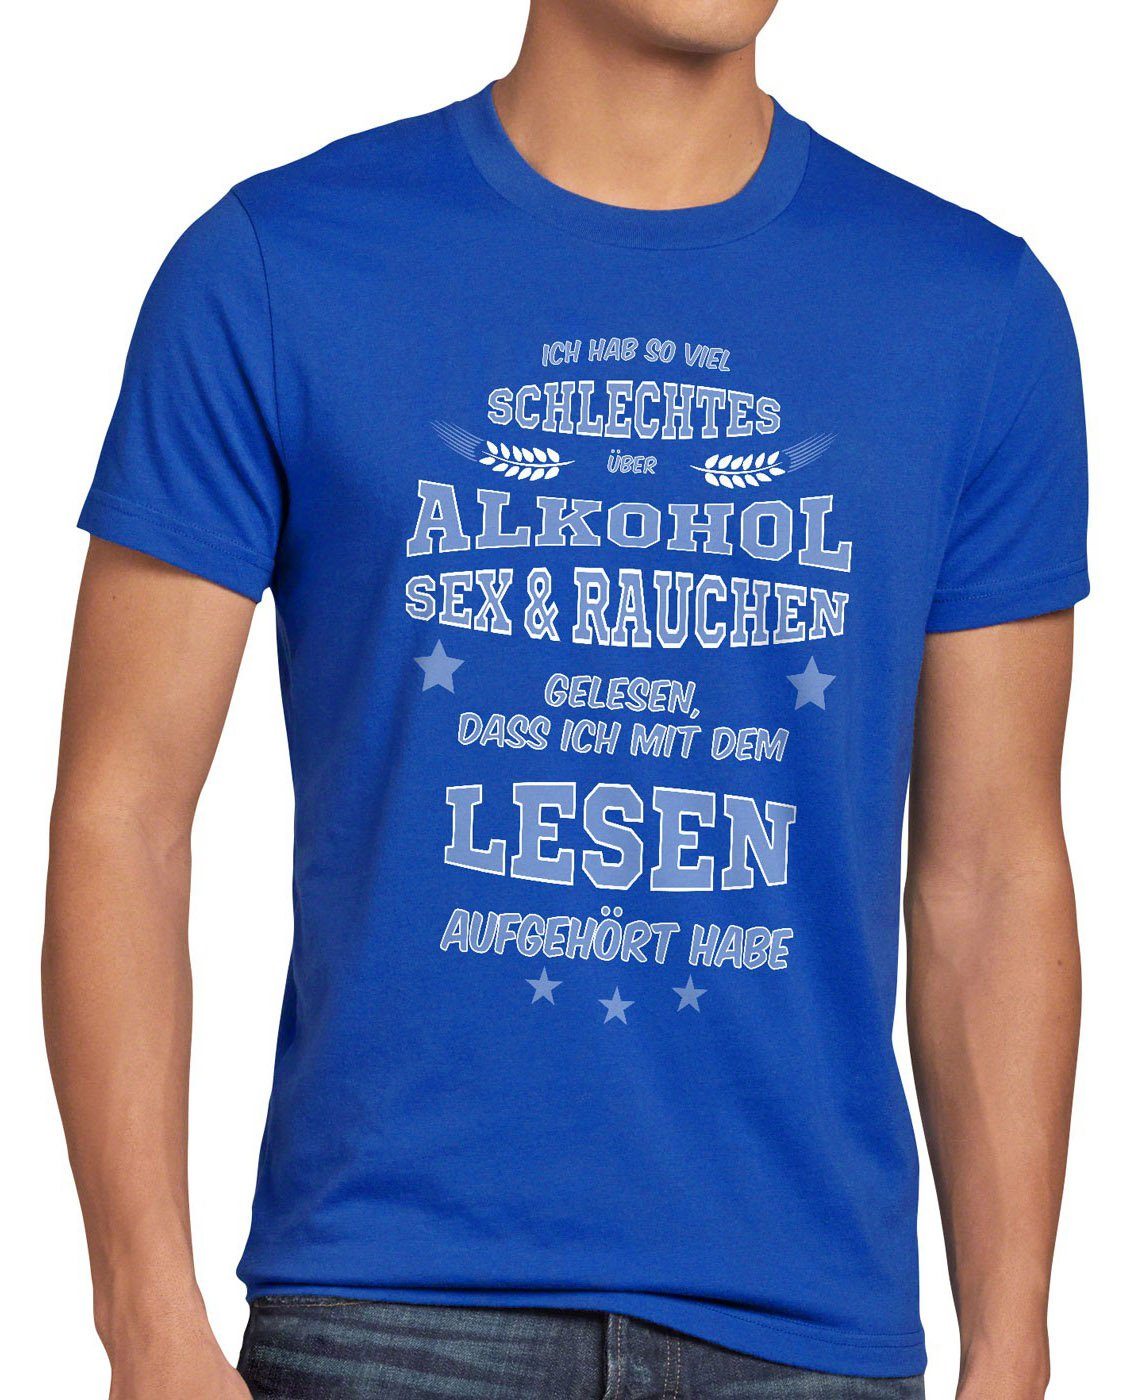 style3 Print-Shirt Herren T-Shirt Spruch Fun Viel Sex Alkohol gelesen blau schlechtes Rauchen Funshirt